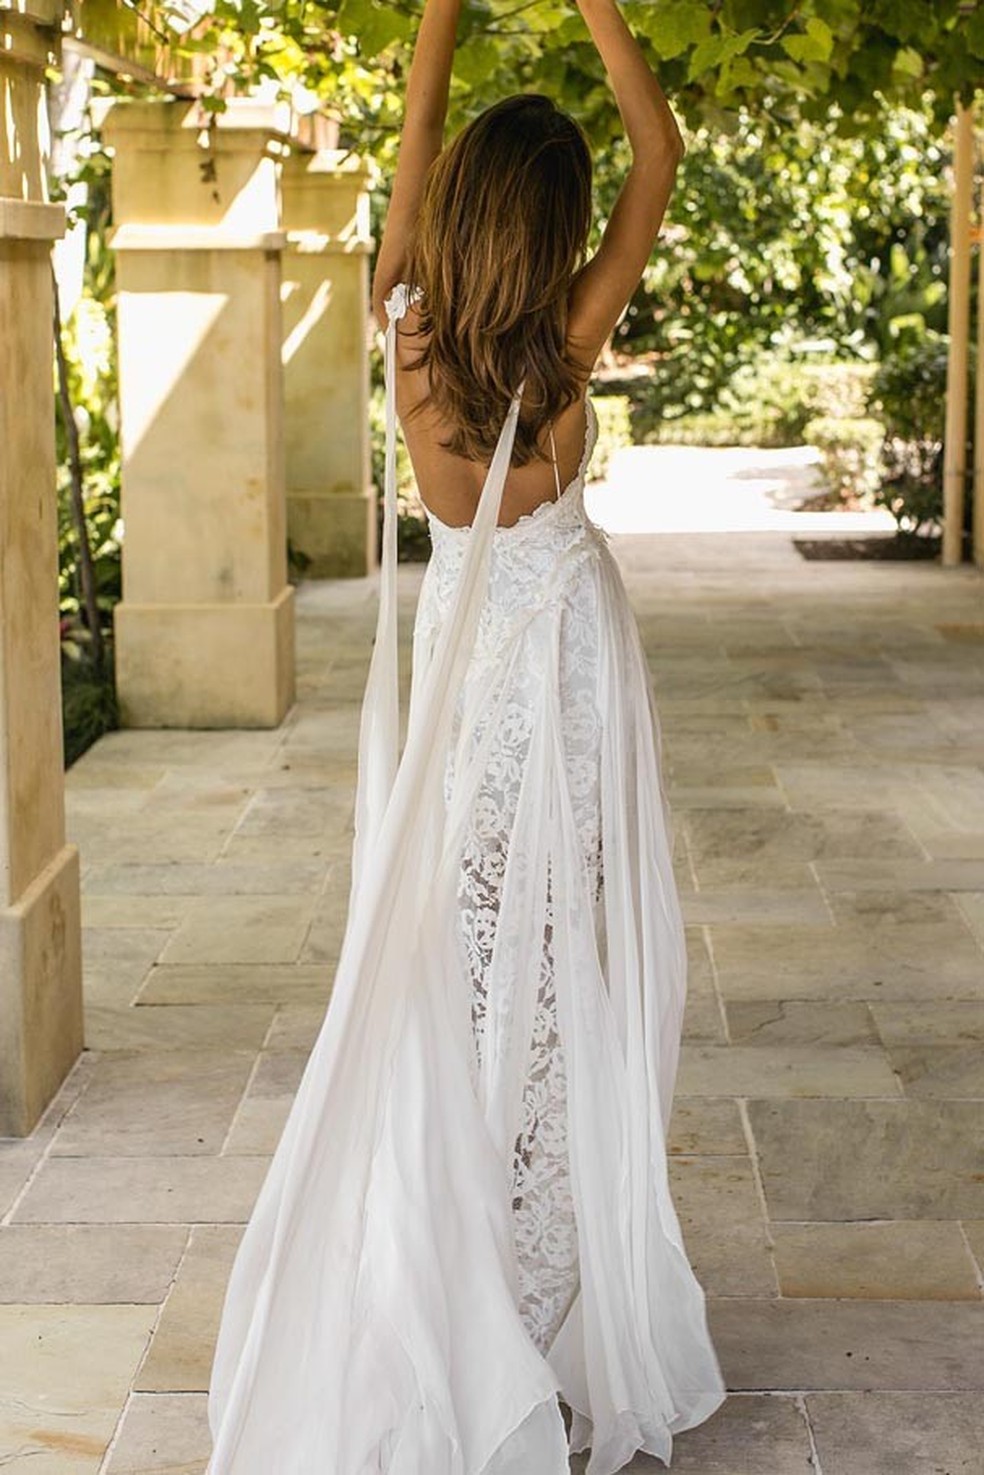 Vestido de noiva amado no Pinterest (Foto: Reprodução) — Foto: Glamour